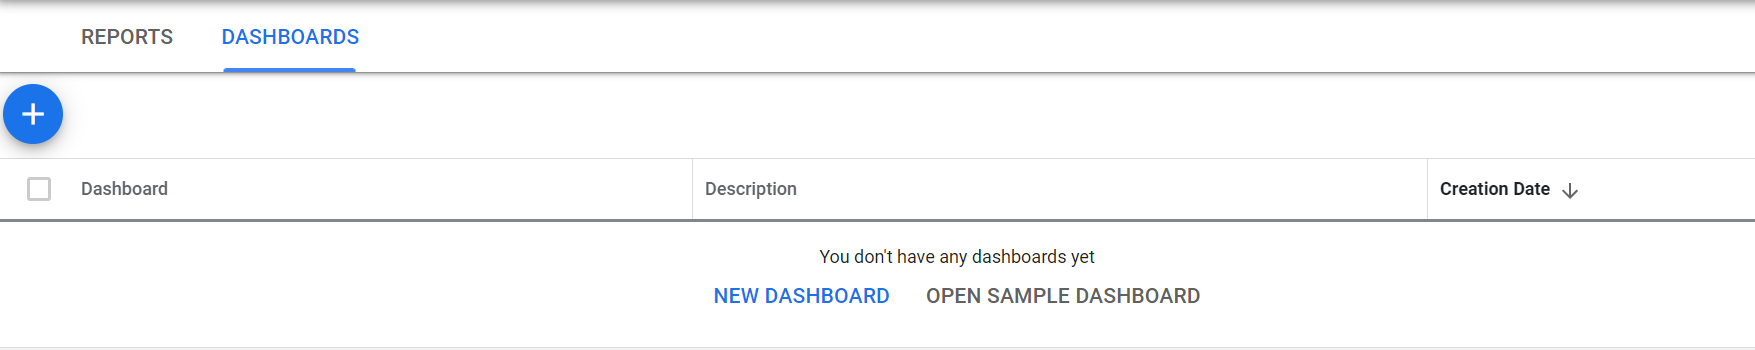 Startseite von Dashboards auf Kundencenter-Ebene, die in Google Ads erstellt wurden.